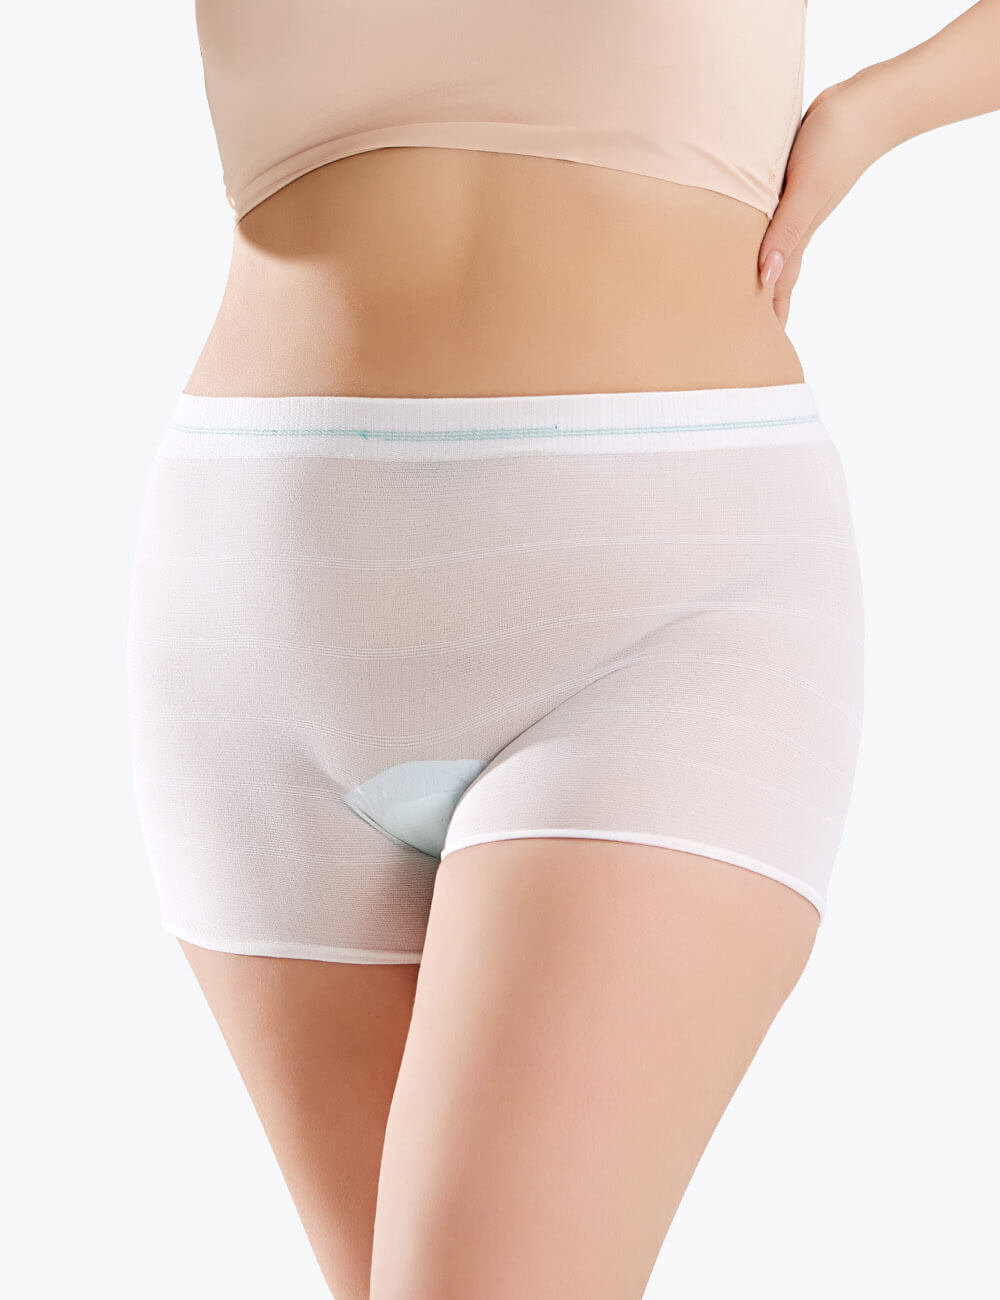 Mesh Underwear Postpartum 8 Count Disposable Postpartum Underwear